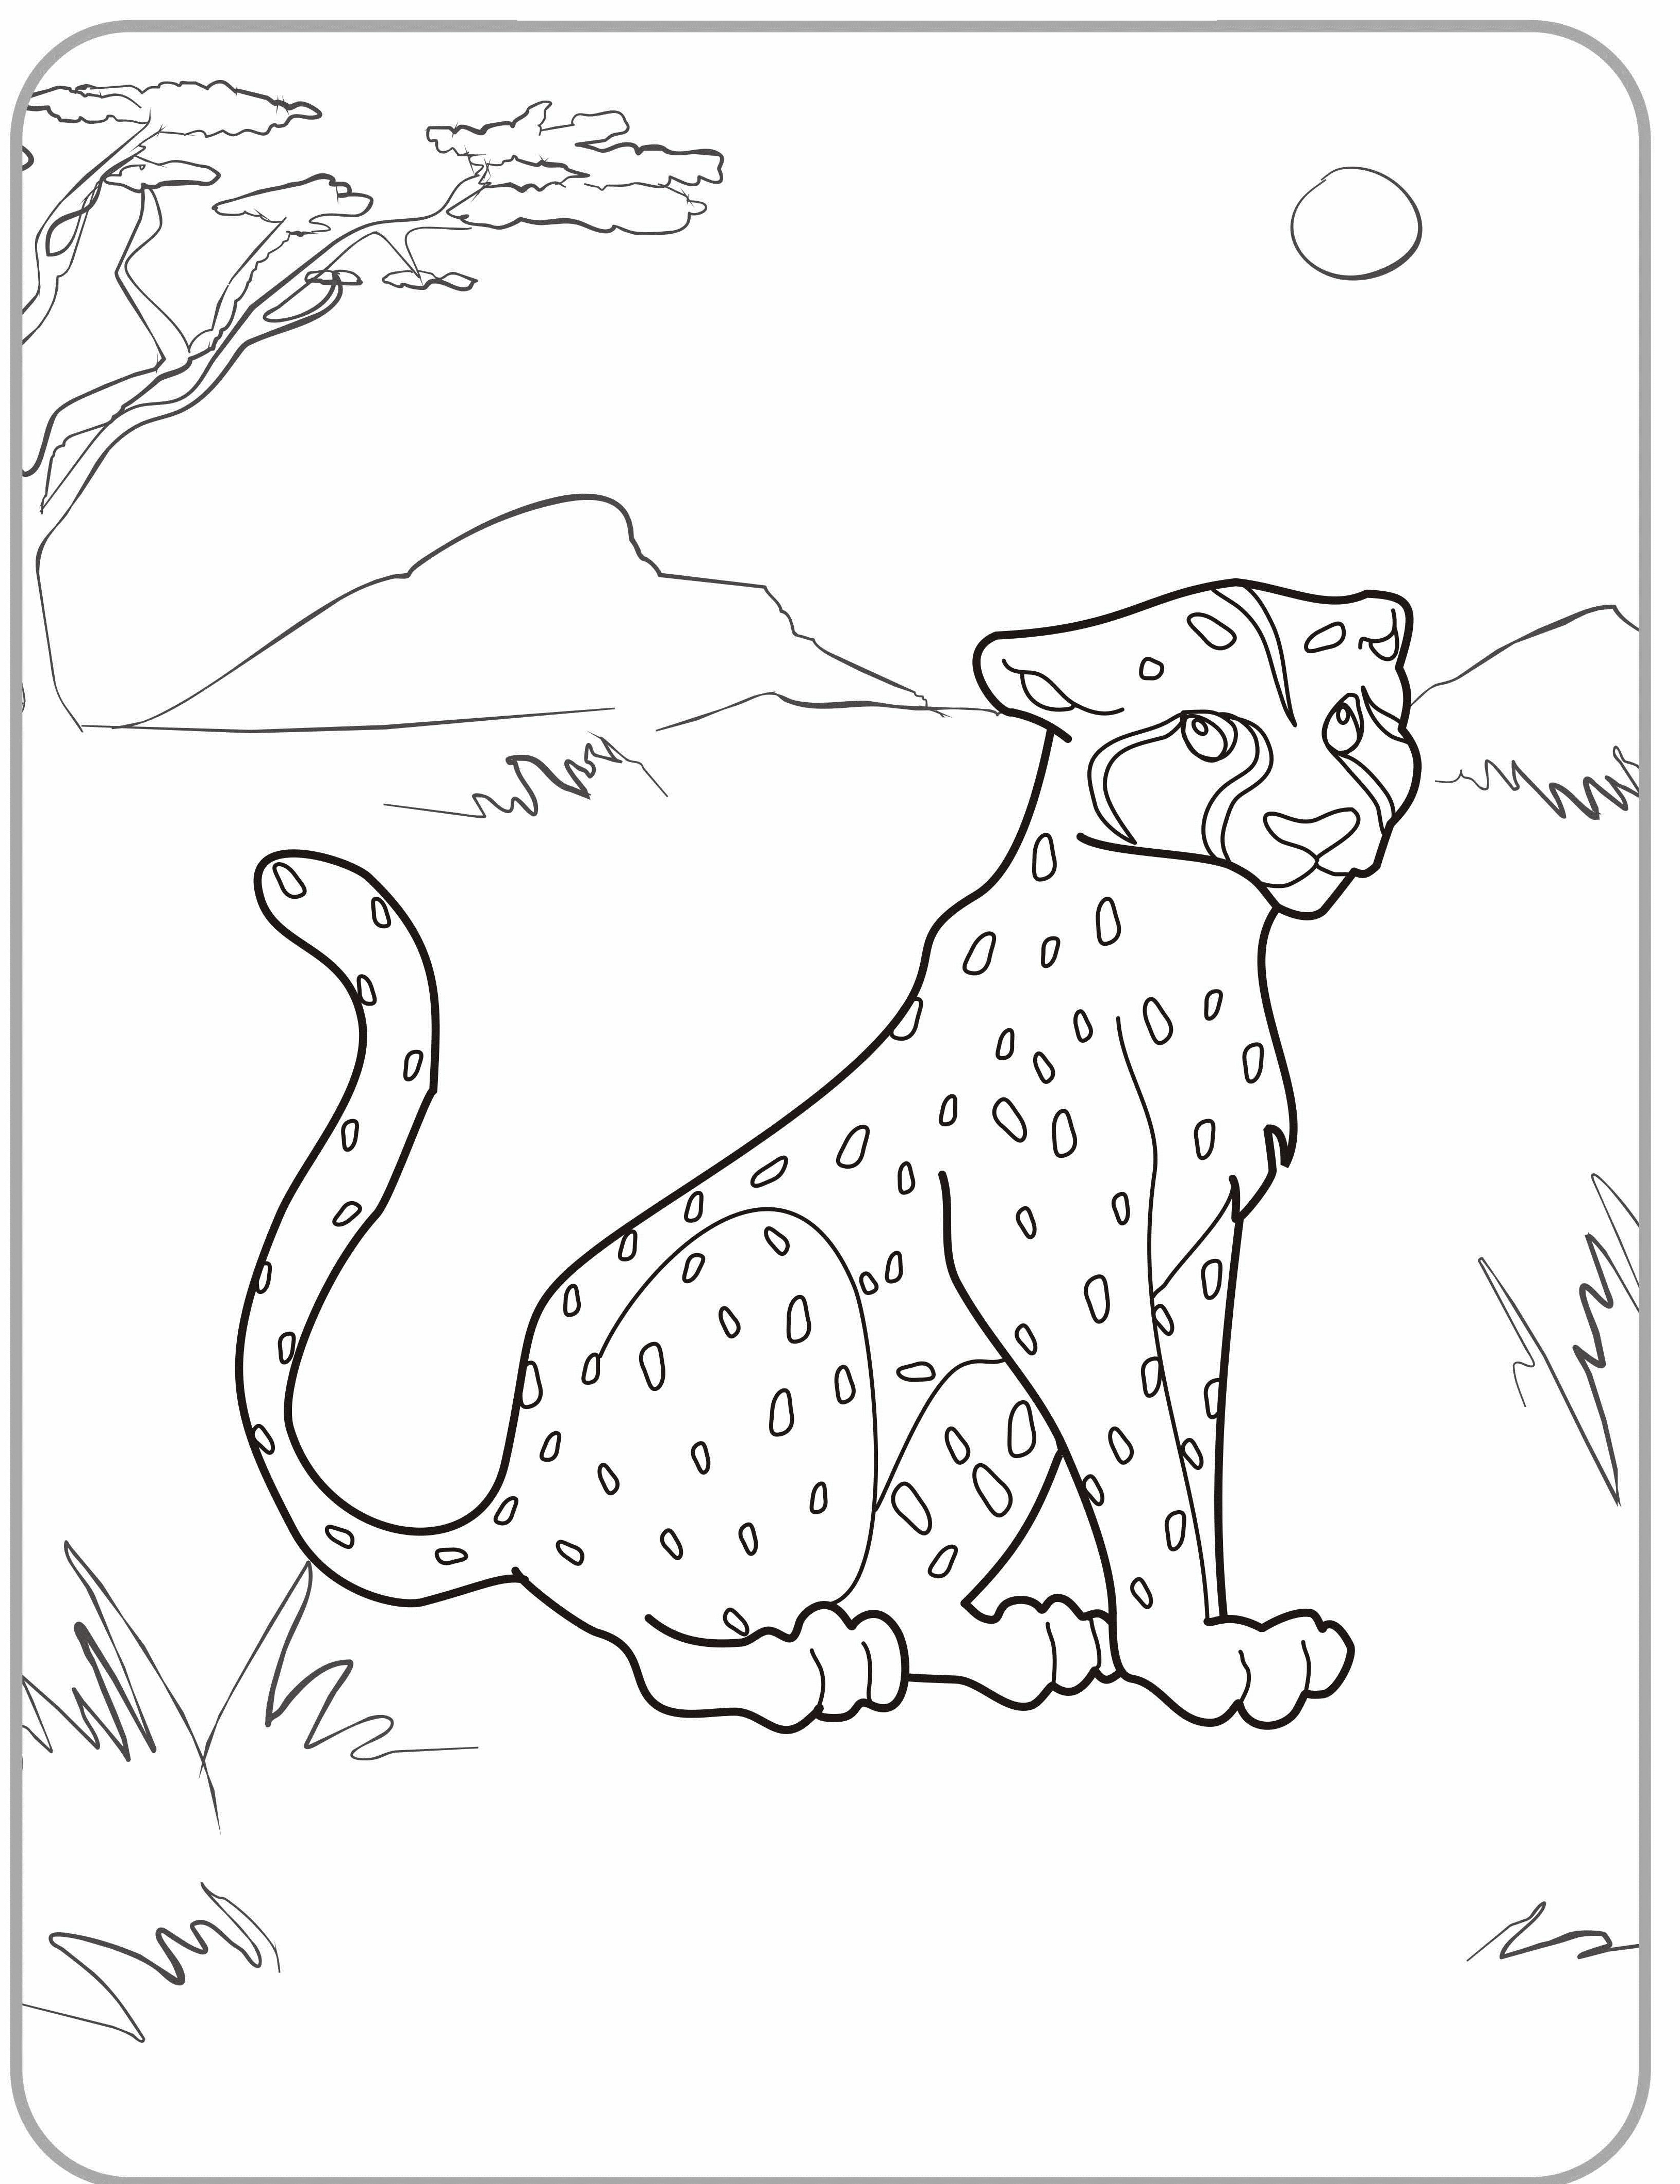 Ausmalbilder Gepard
 Ausmalbilder – Gespenst kostenlos ausdrucken Malvorlagen